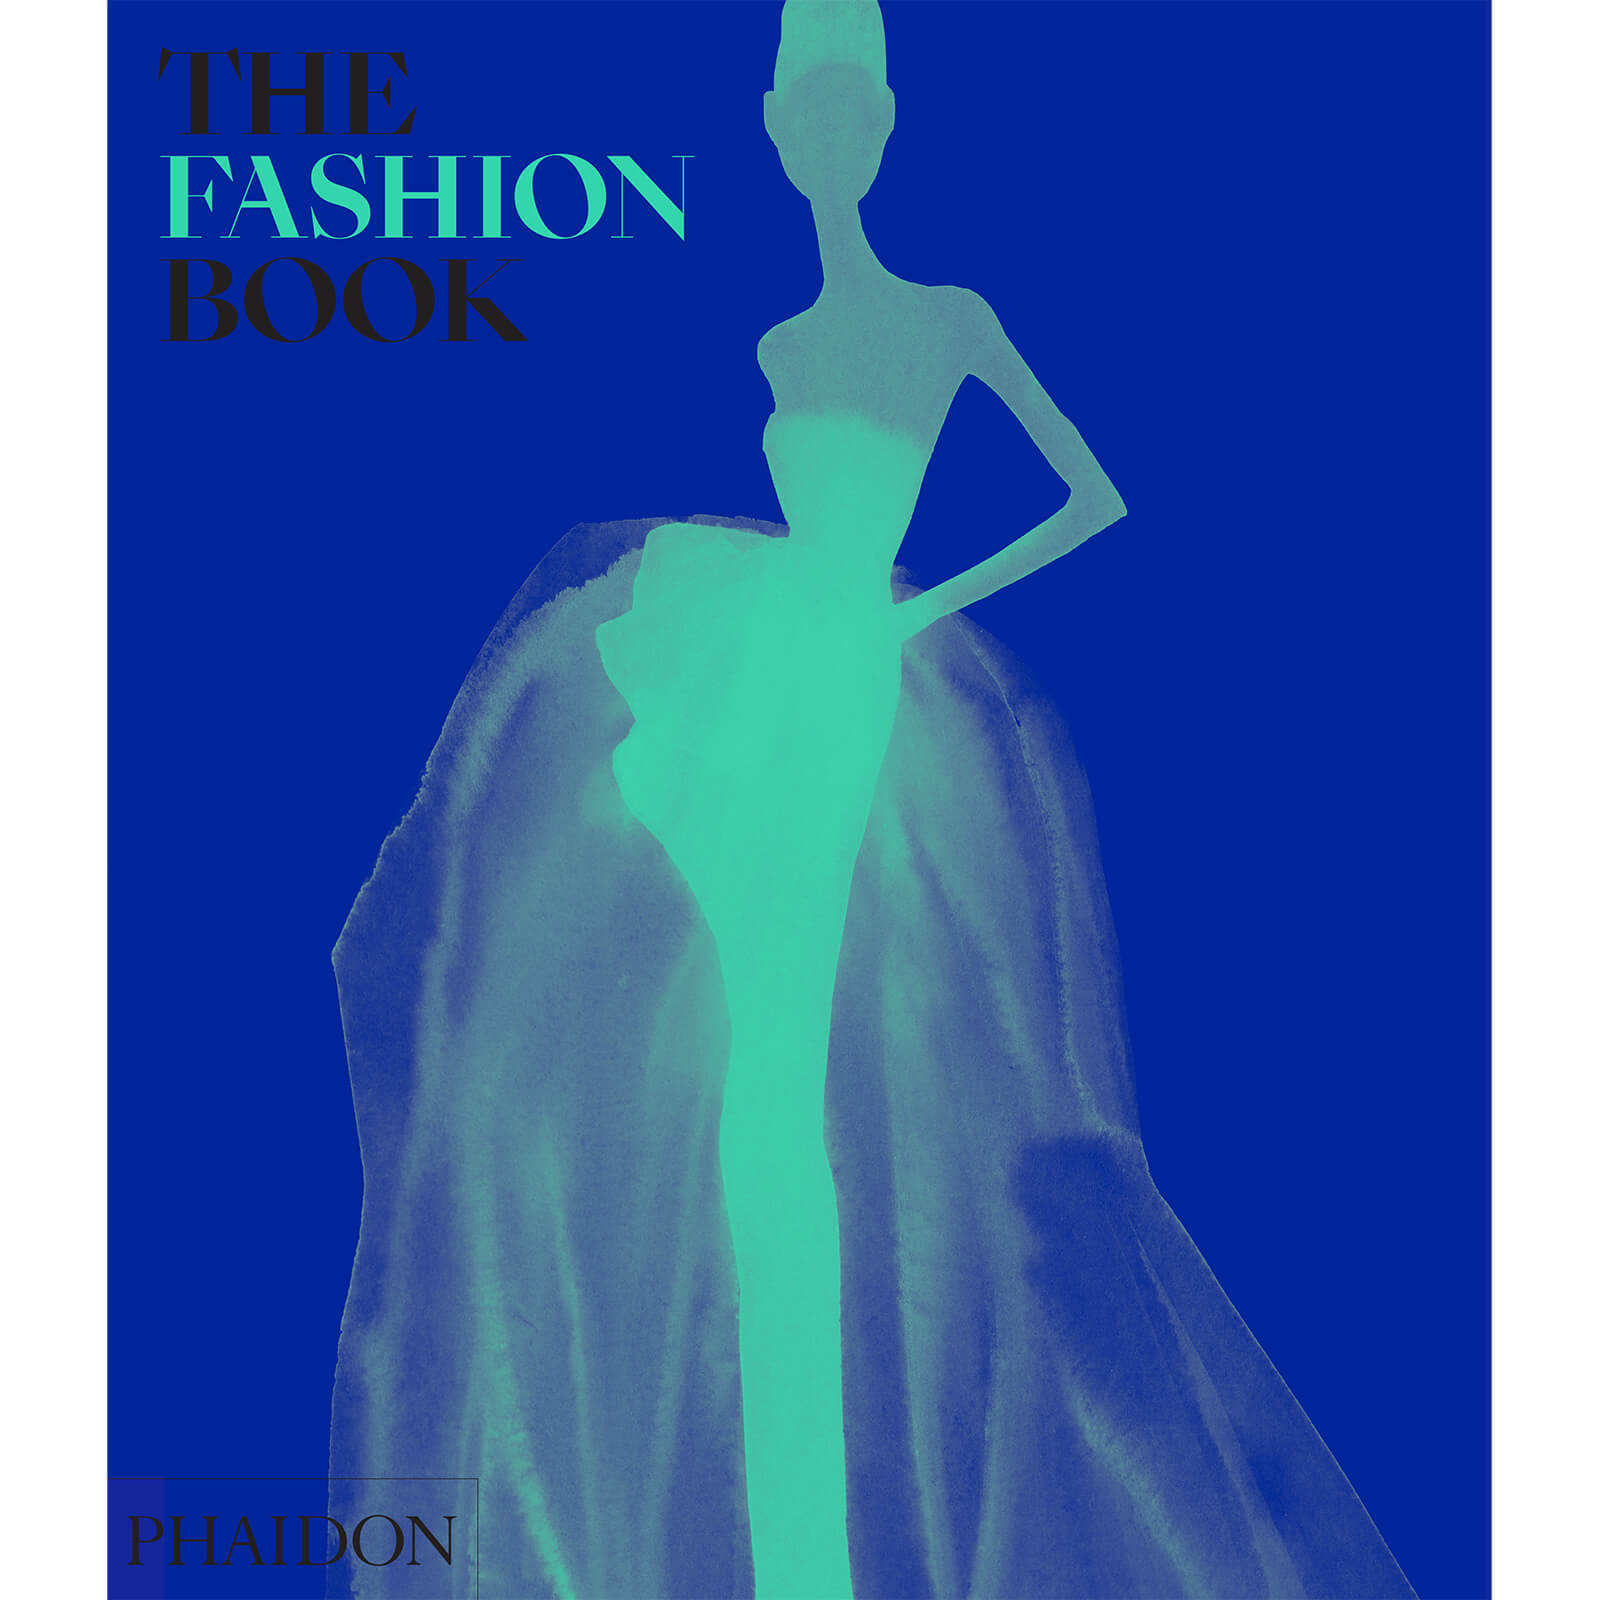 Phaidon: The Fashion Book